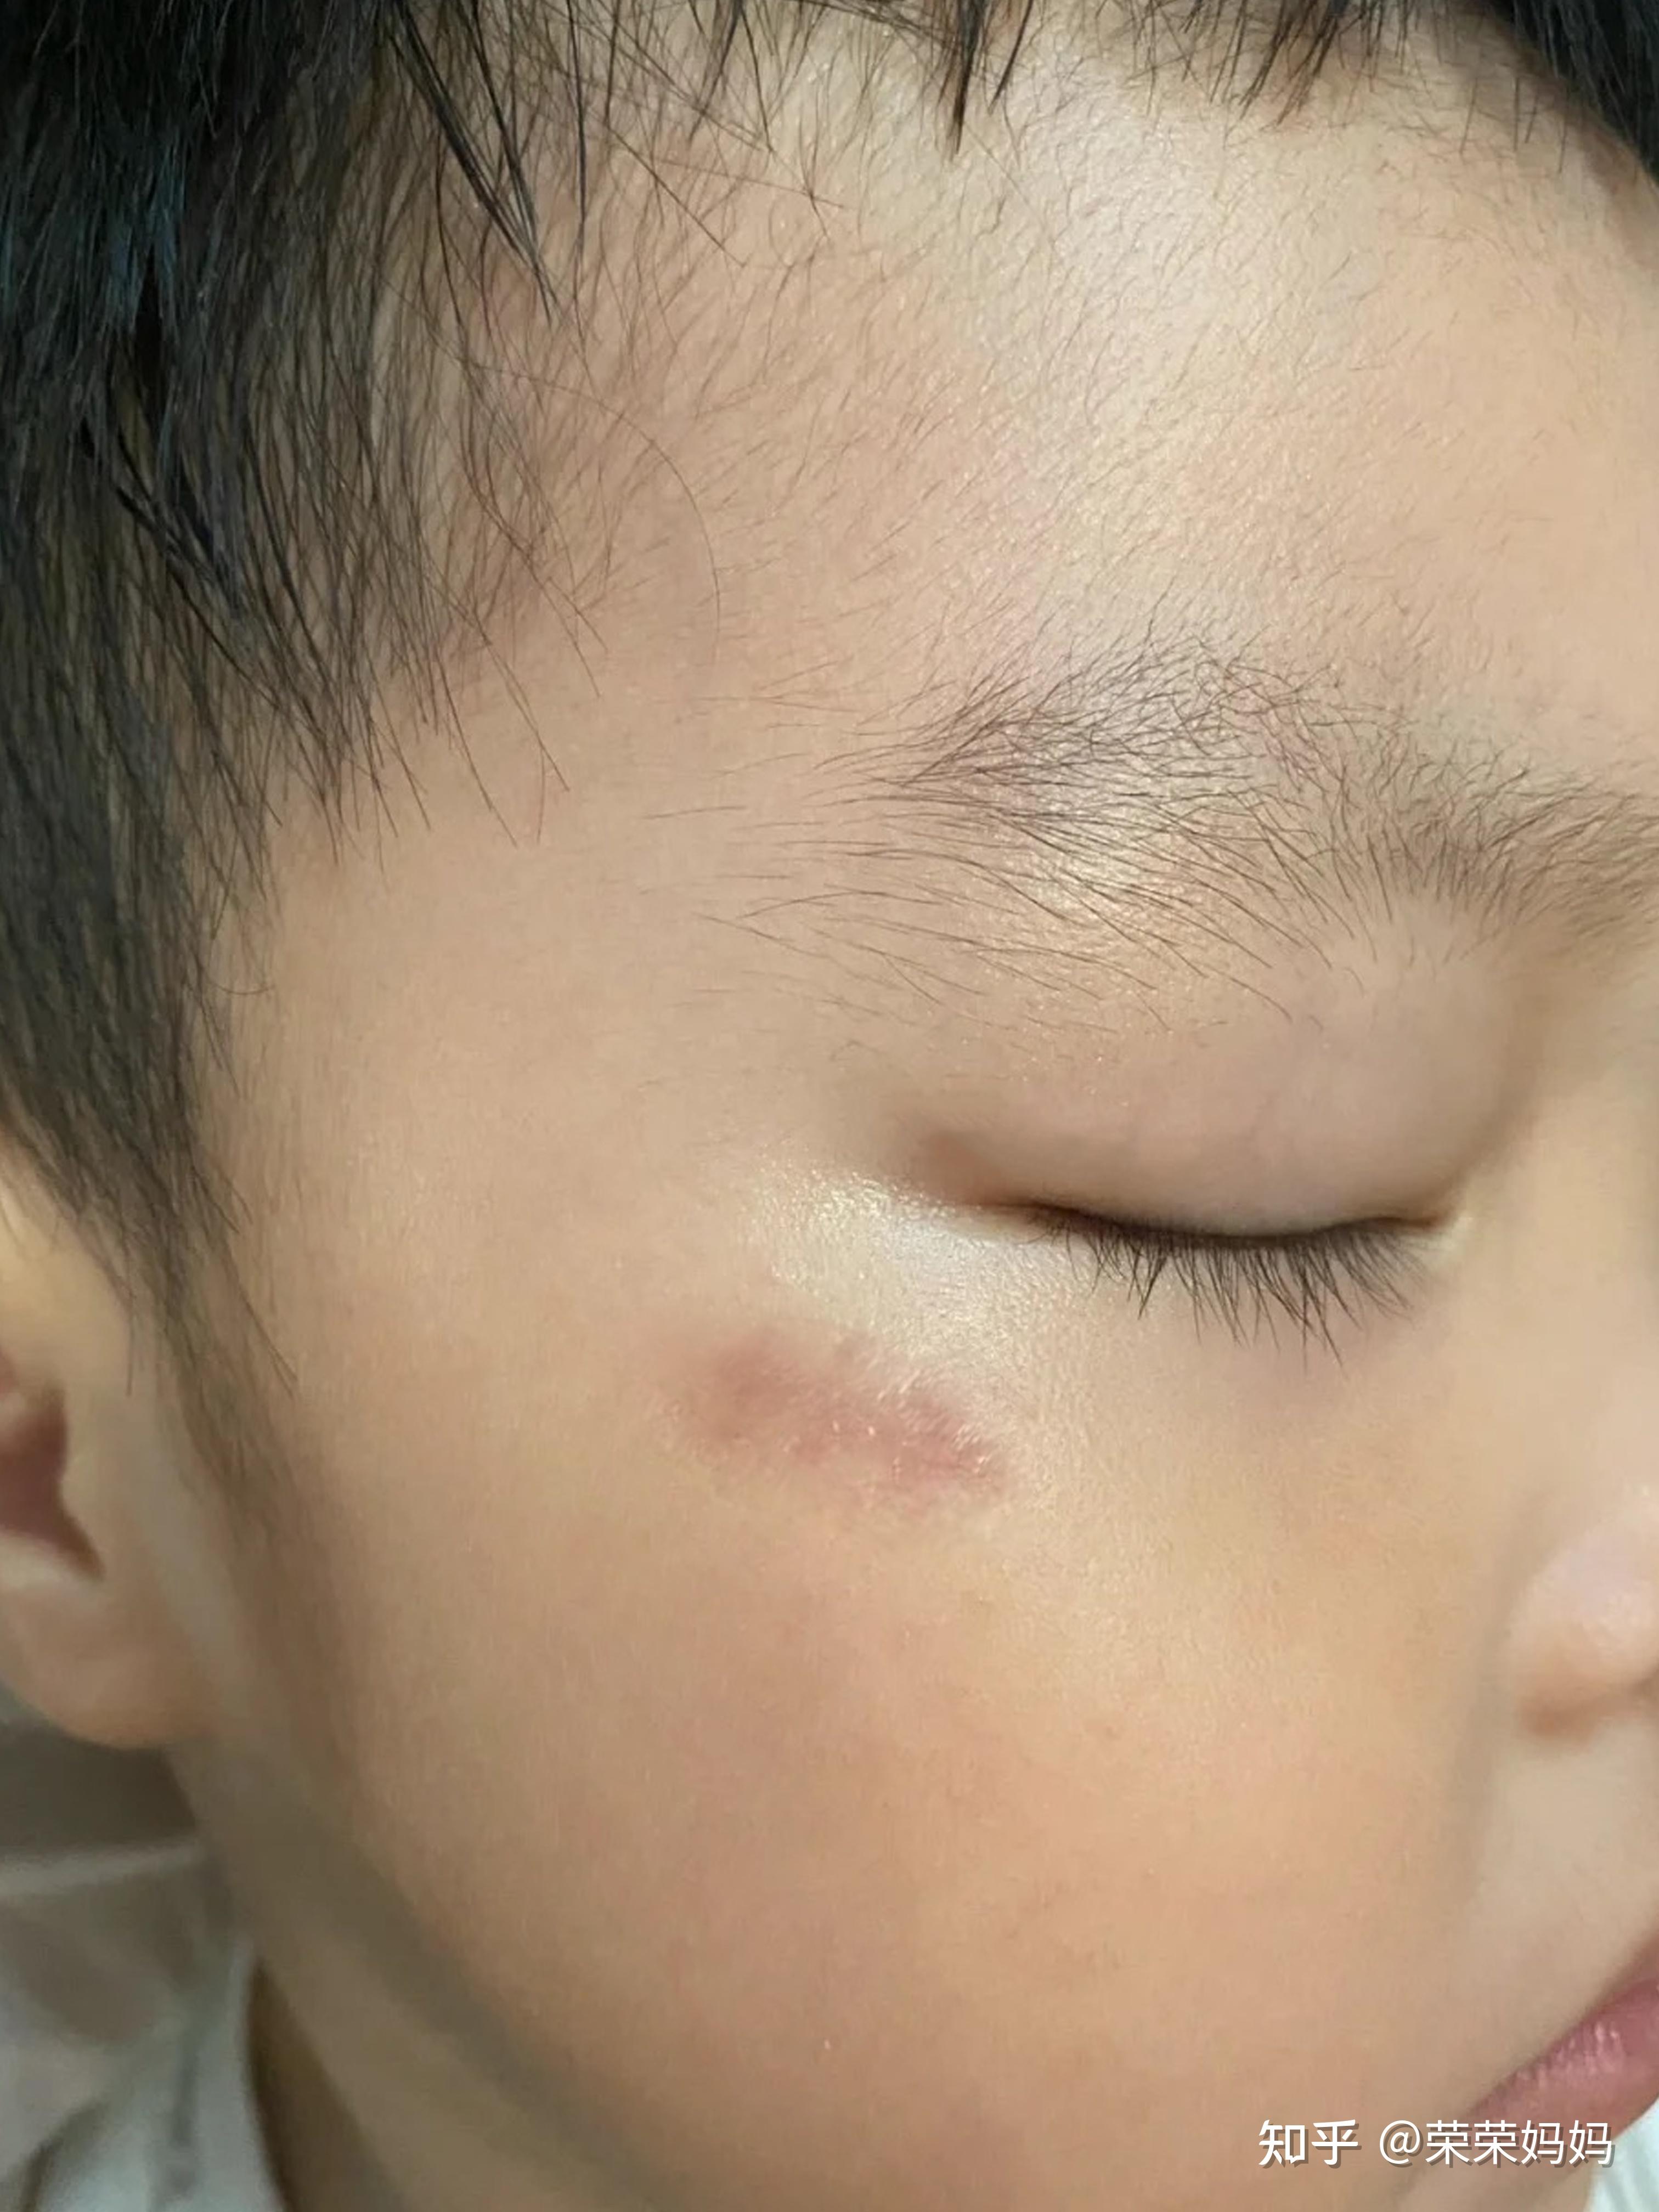 婴儿脸划伤会留疤痕吗（孩子被抓伤脸）-幼儿百科-魔术铺